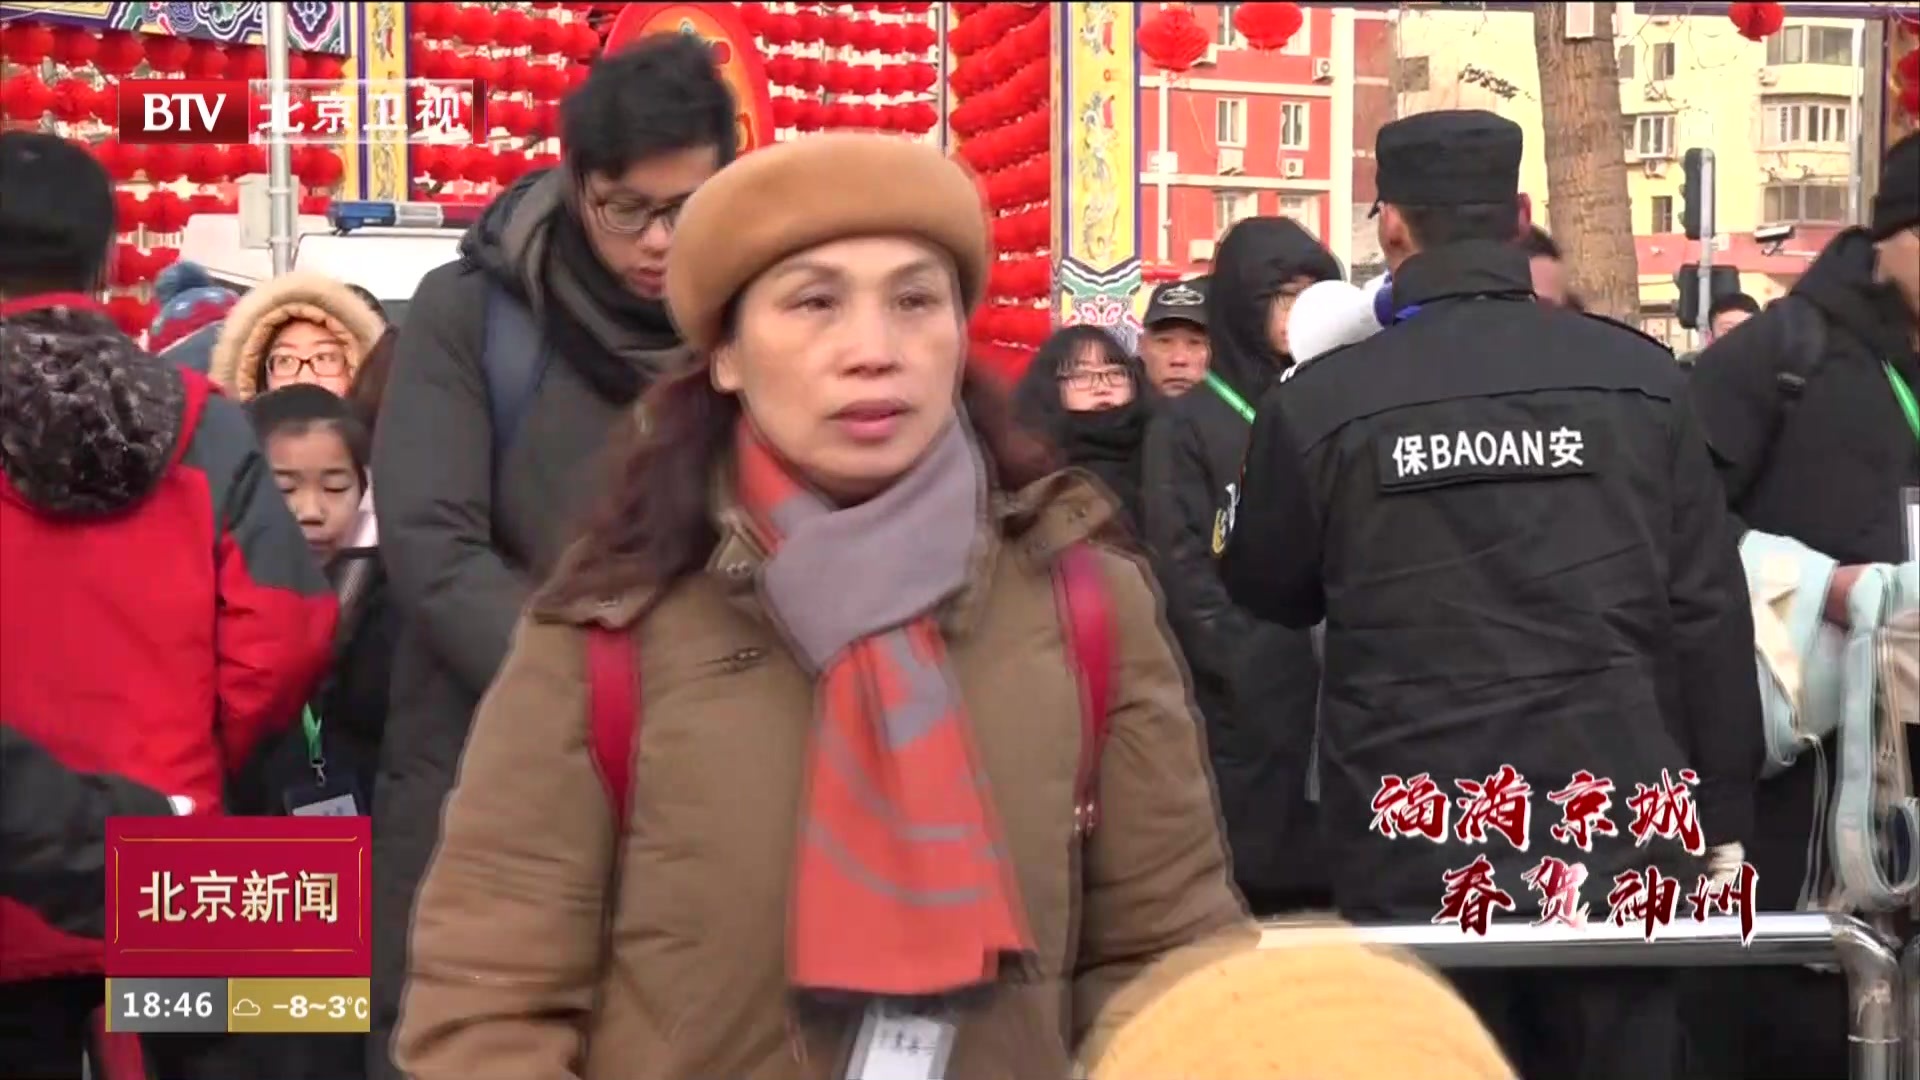 春节假期北京市环境秩序良好 城管出动执法力量1.6万人次